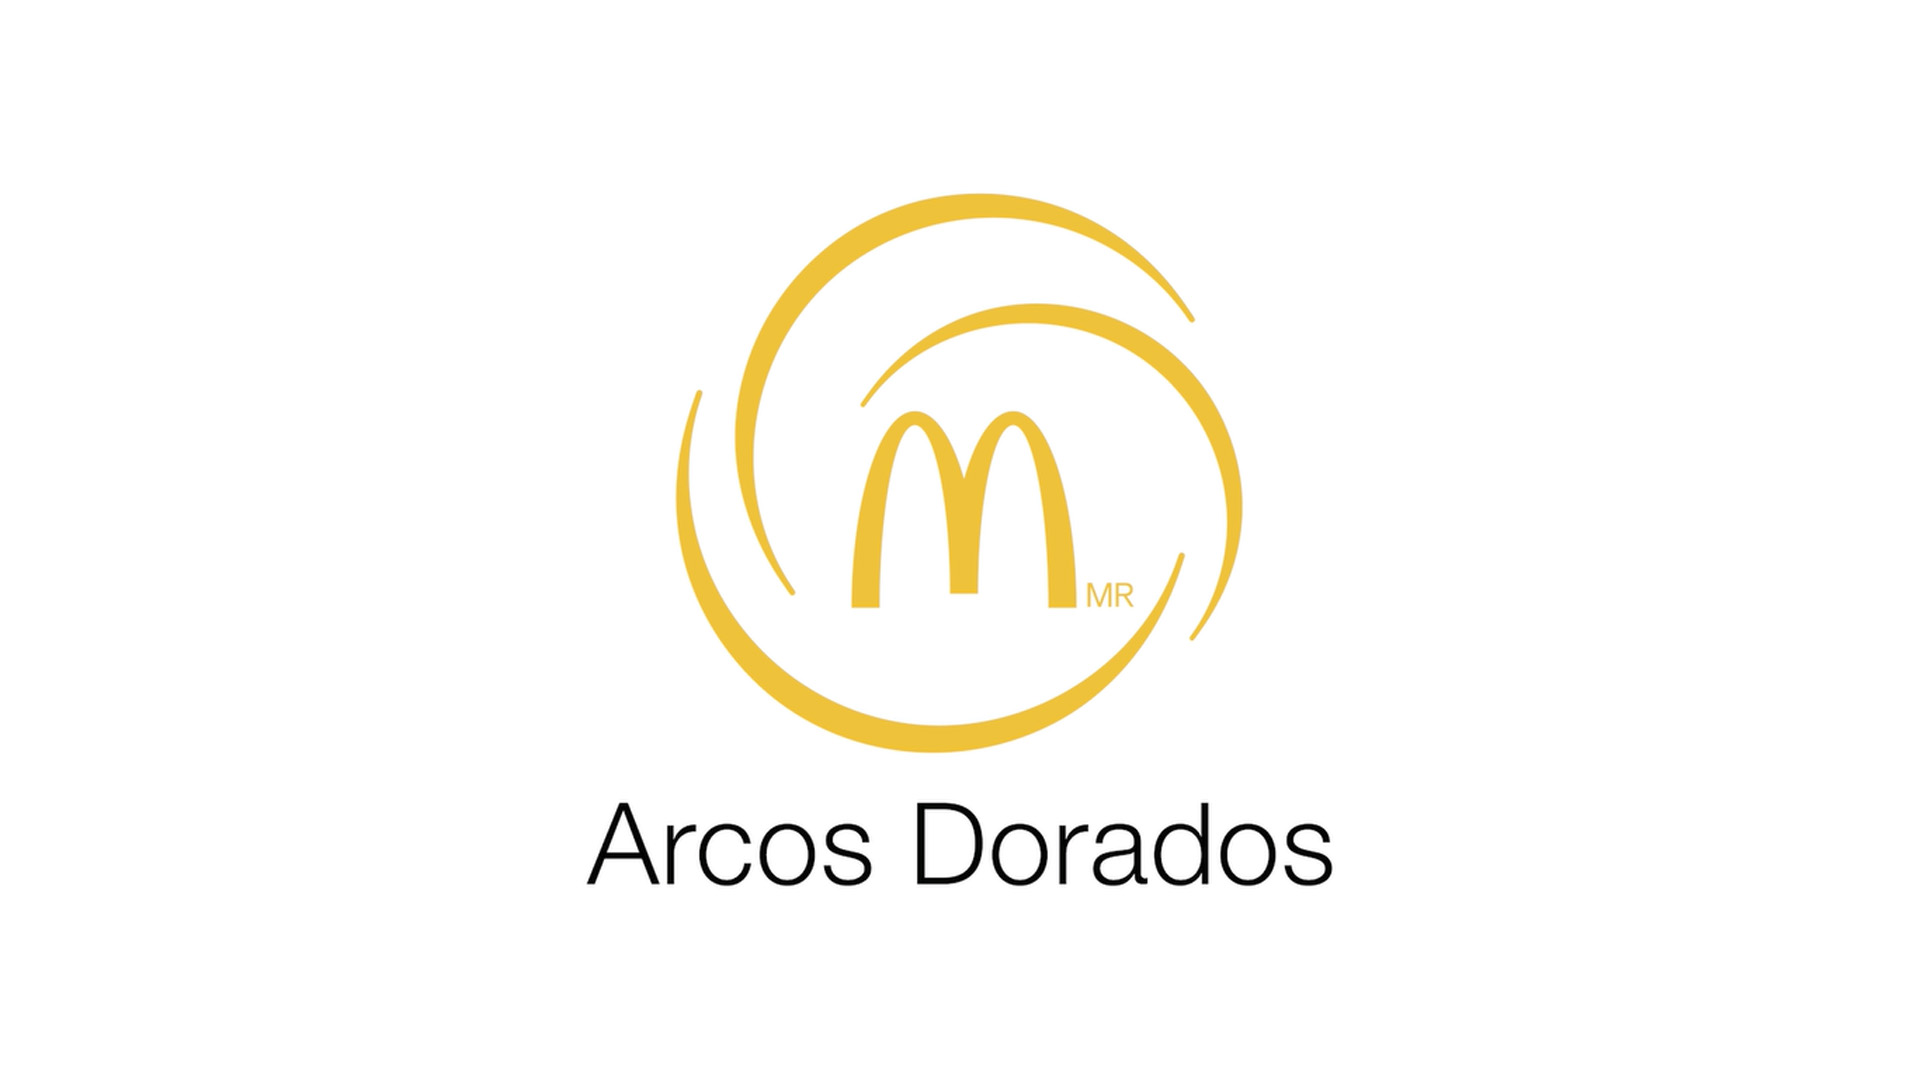 Arcos Dorados reabre sus restaurantes con las más rigurosas medidas de  protección ante el Covid-19 - Arcos Dorados